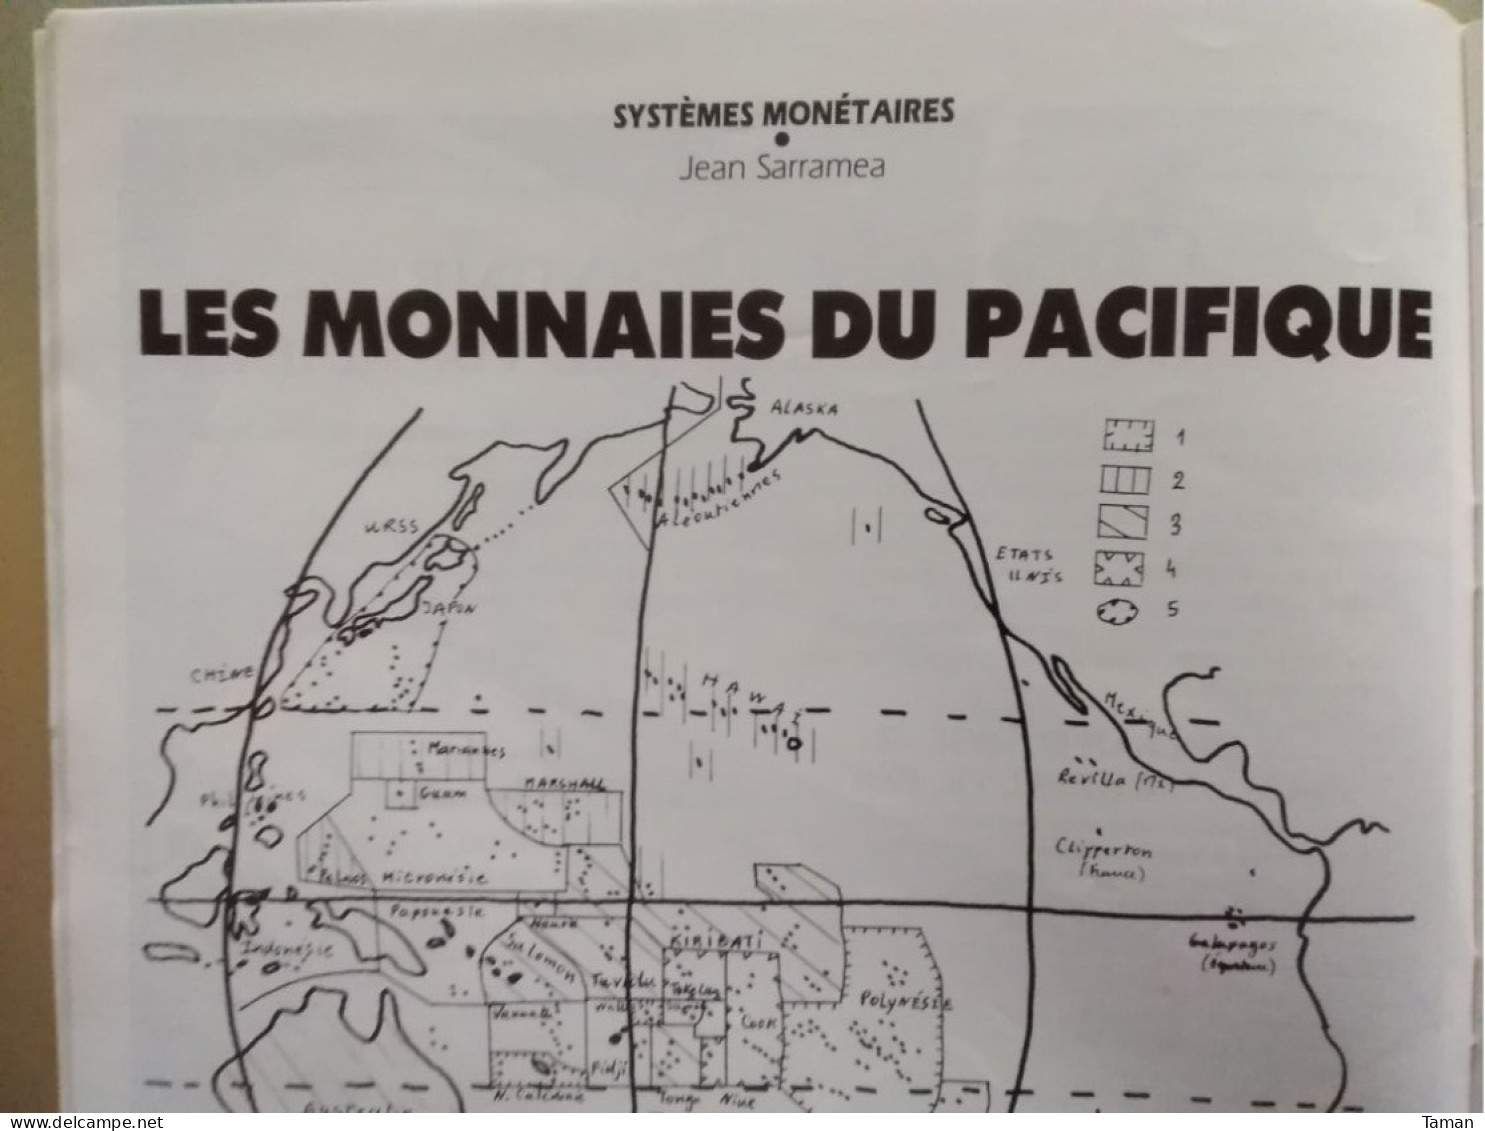 Numismatique & Change - Monnaies Du Pacifique - Les Concours 10 Et 100 F - Contremarque - La Taille Du Boulanger - Französisch